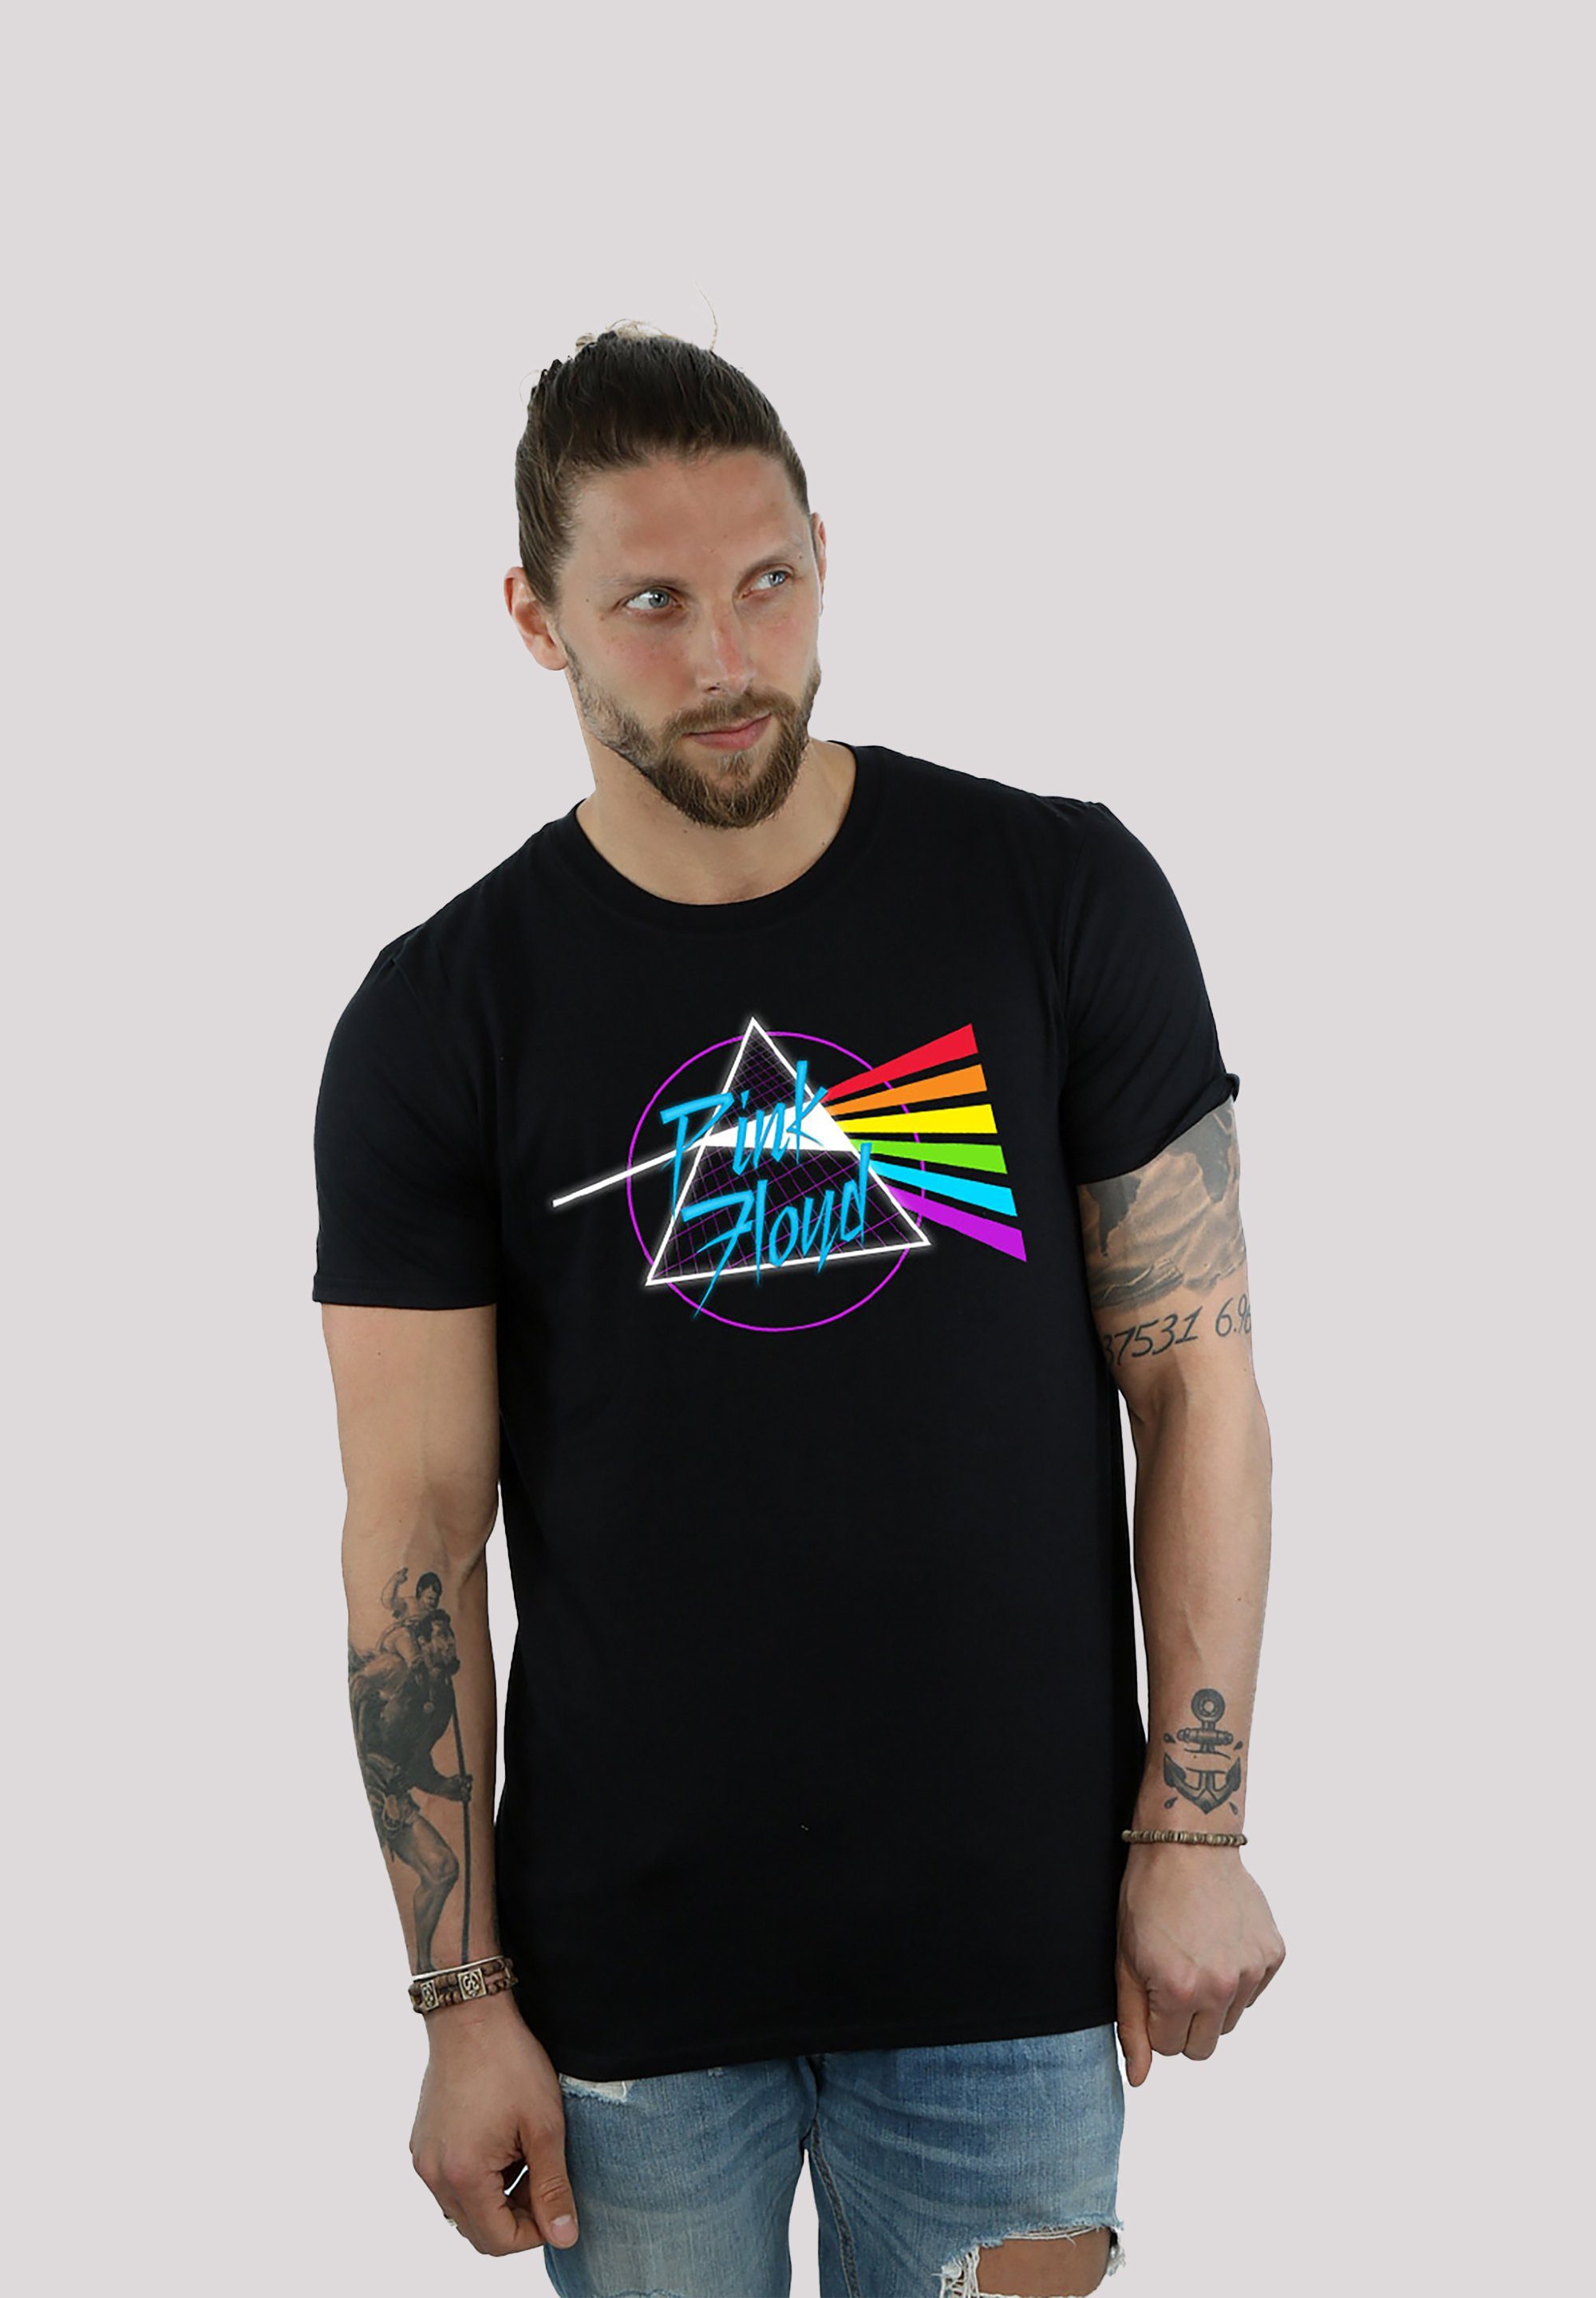 Dark Baumwollstoff Sehr T-Shirt weicher Side mit Print, Neon Pink Floyd hohem Tragekomfort F4NT4STIC